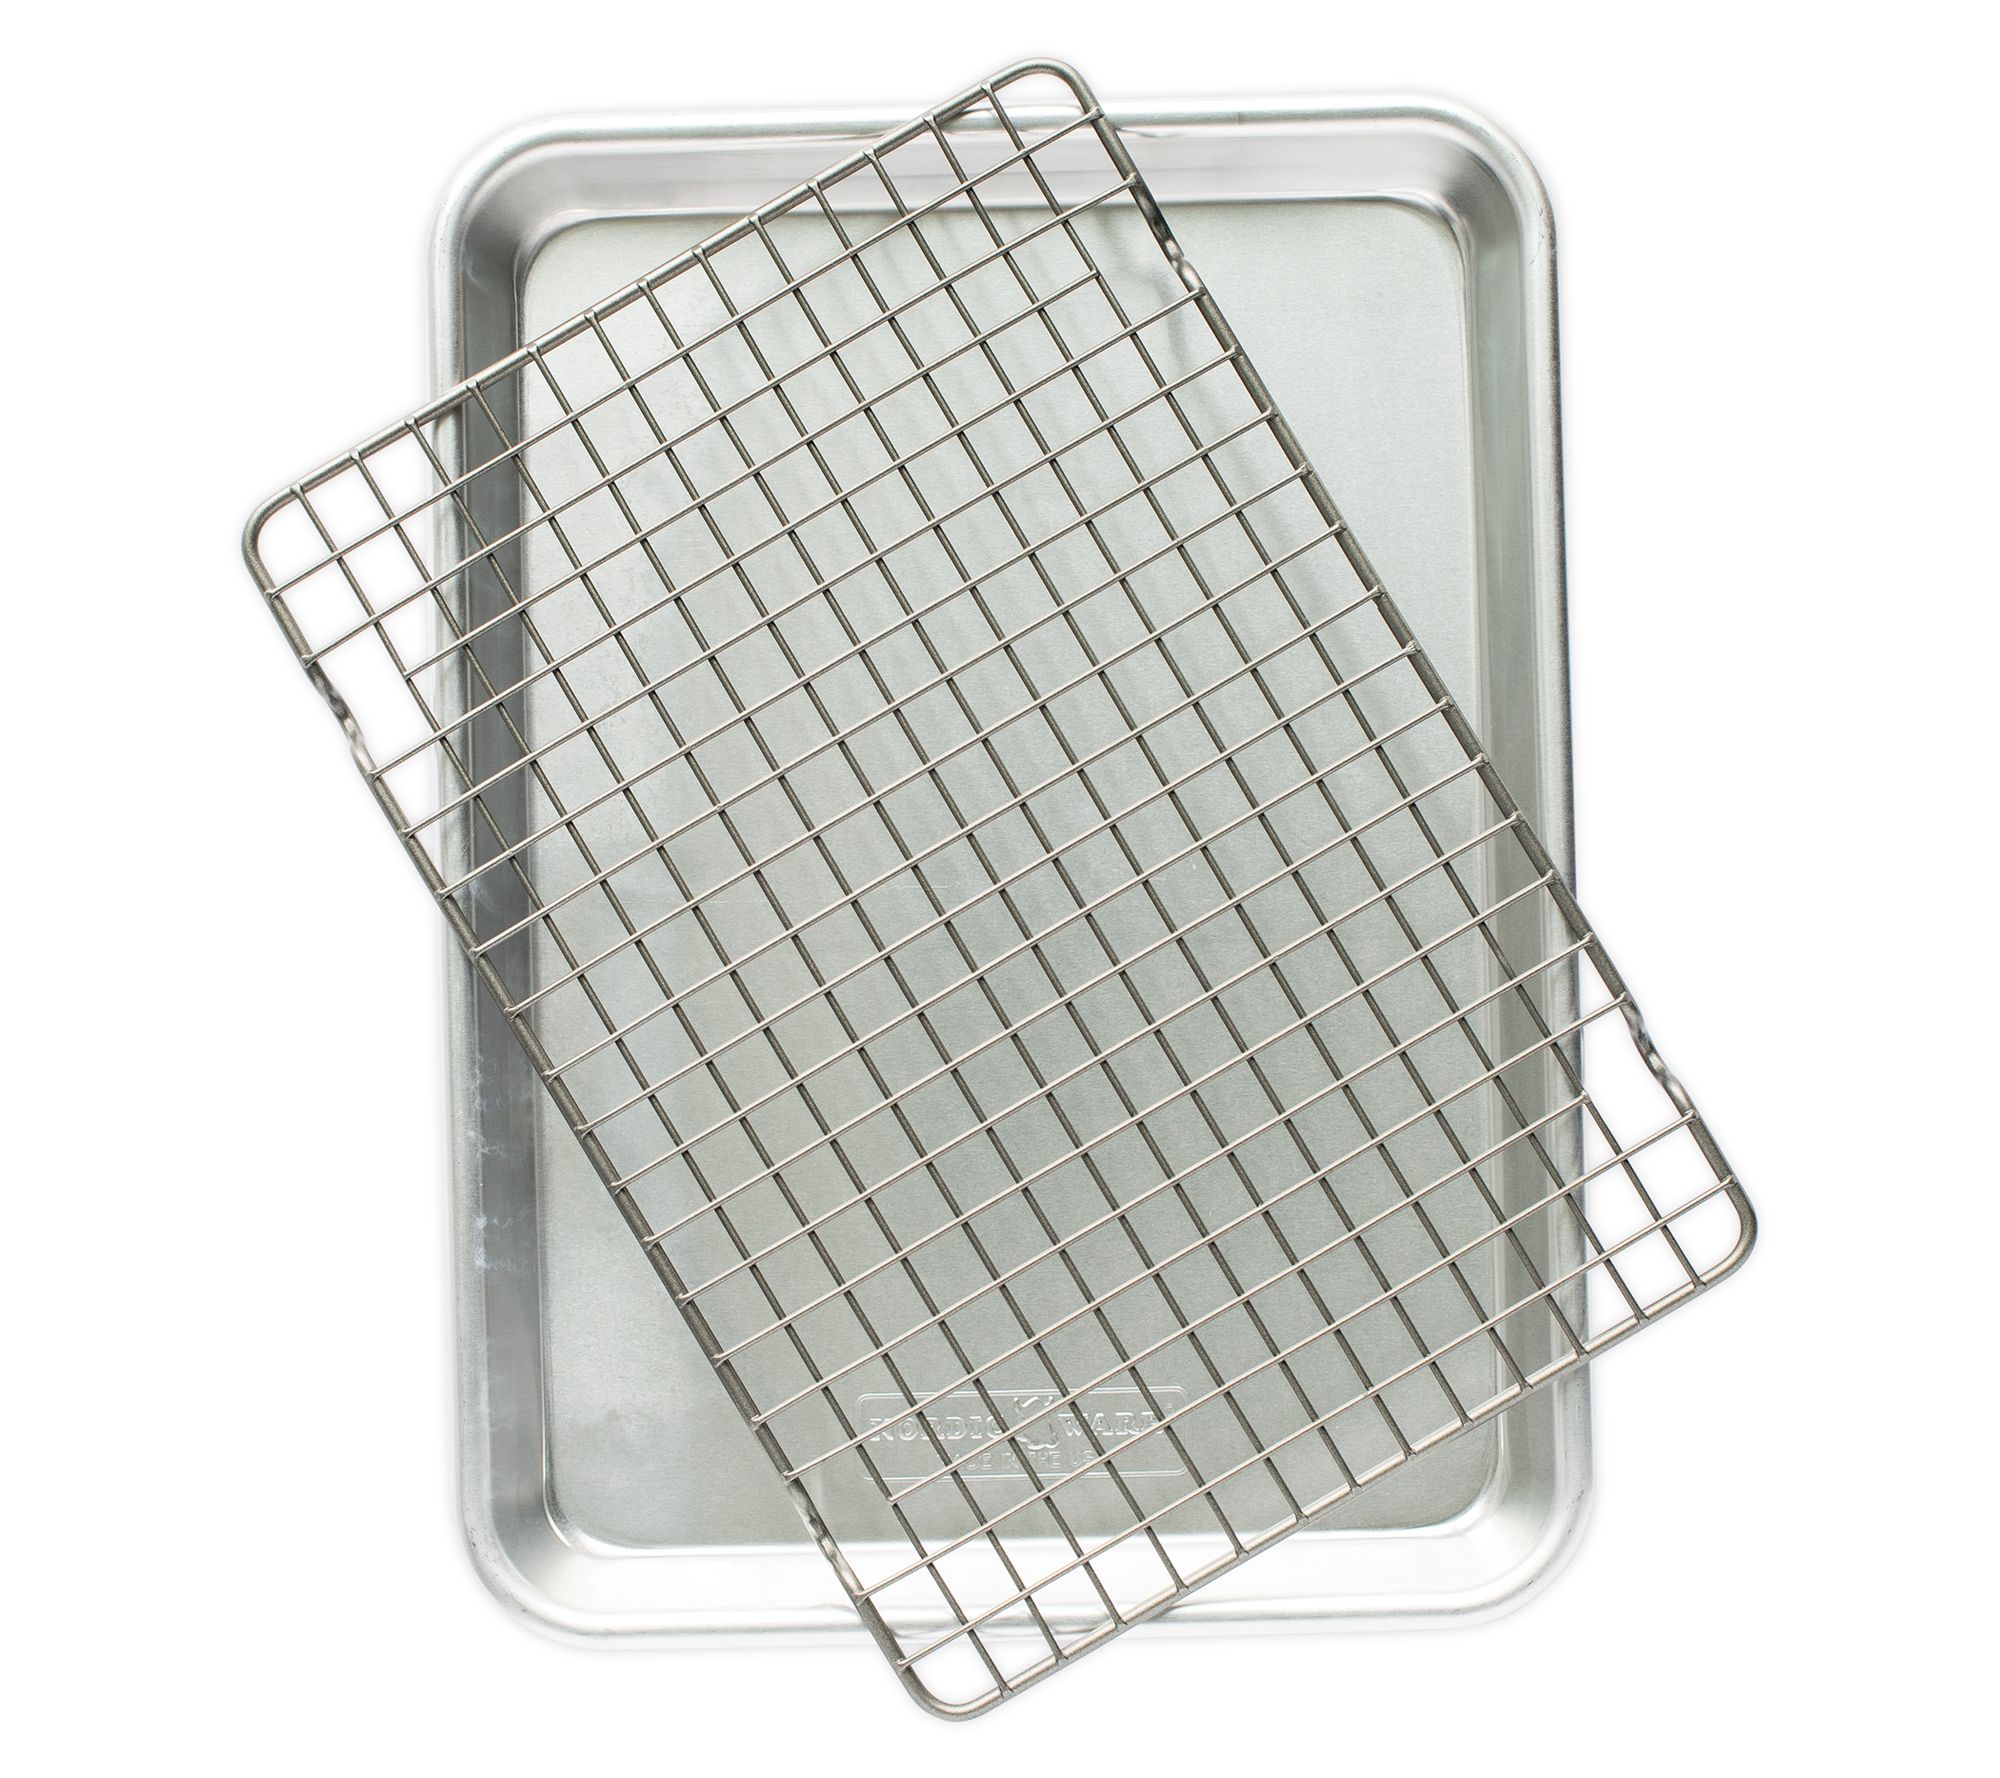 Anolon Pro-Bake Bakeware Aluminized Steel Half Sheet Baking Pan Set,  2-Piece, Silver